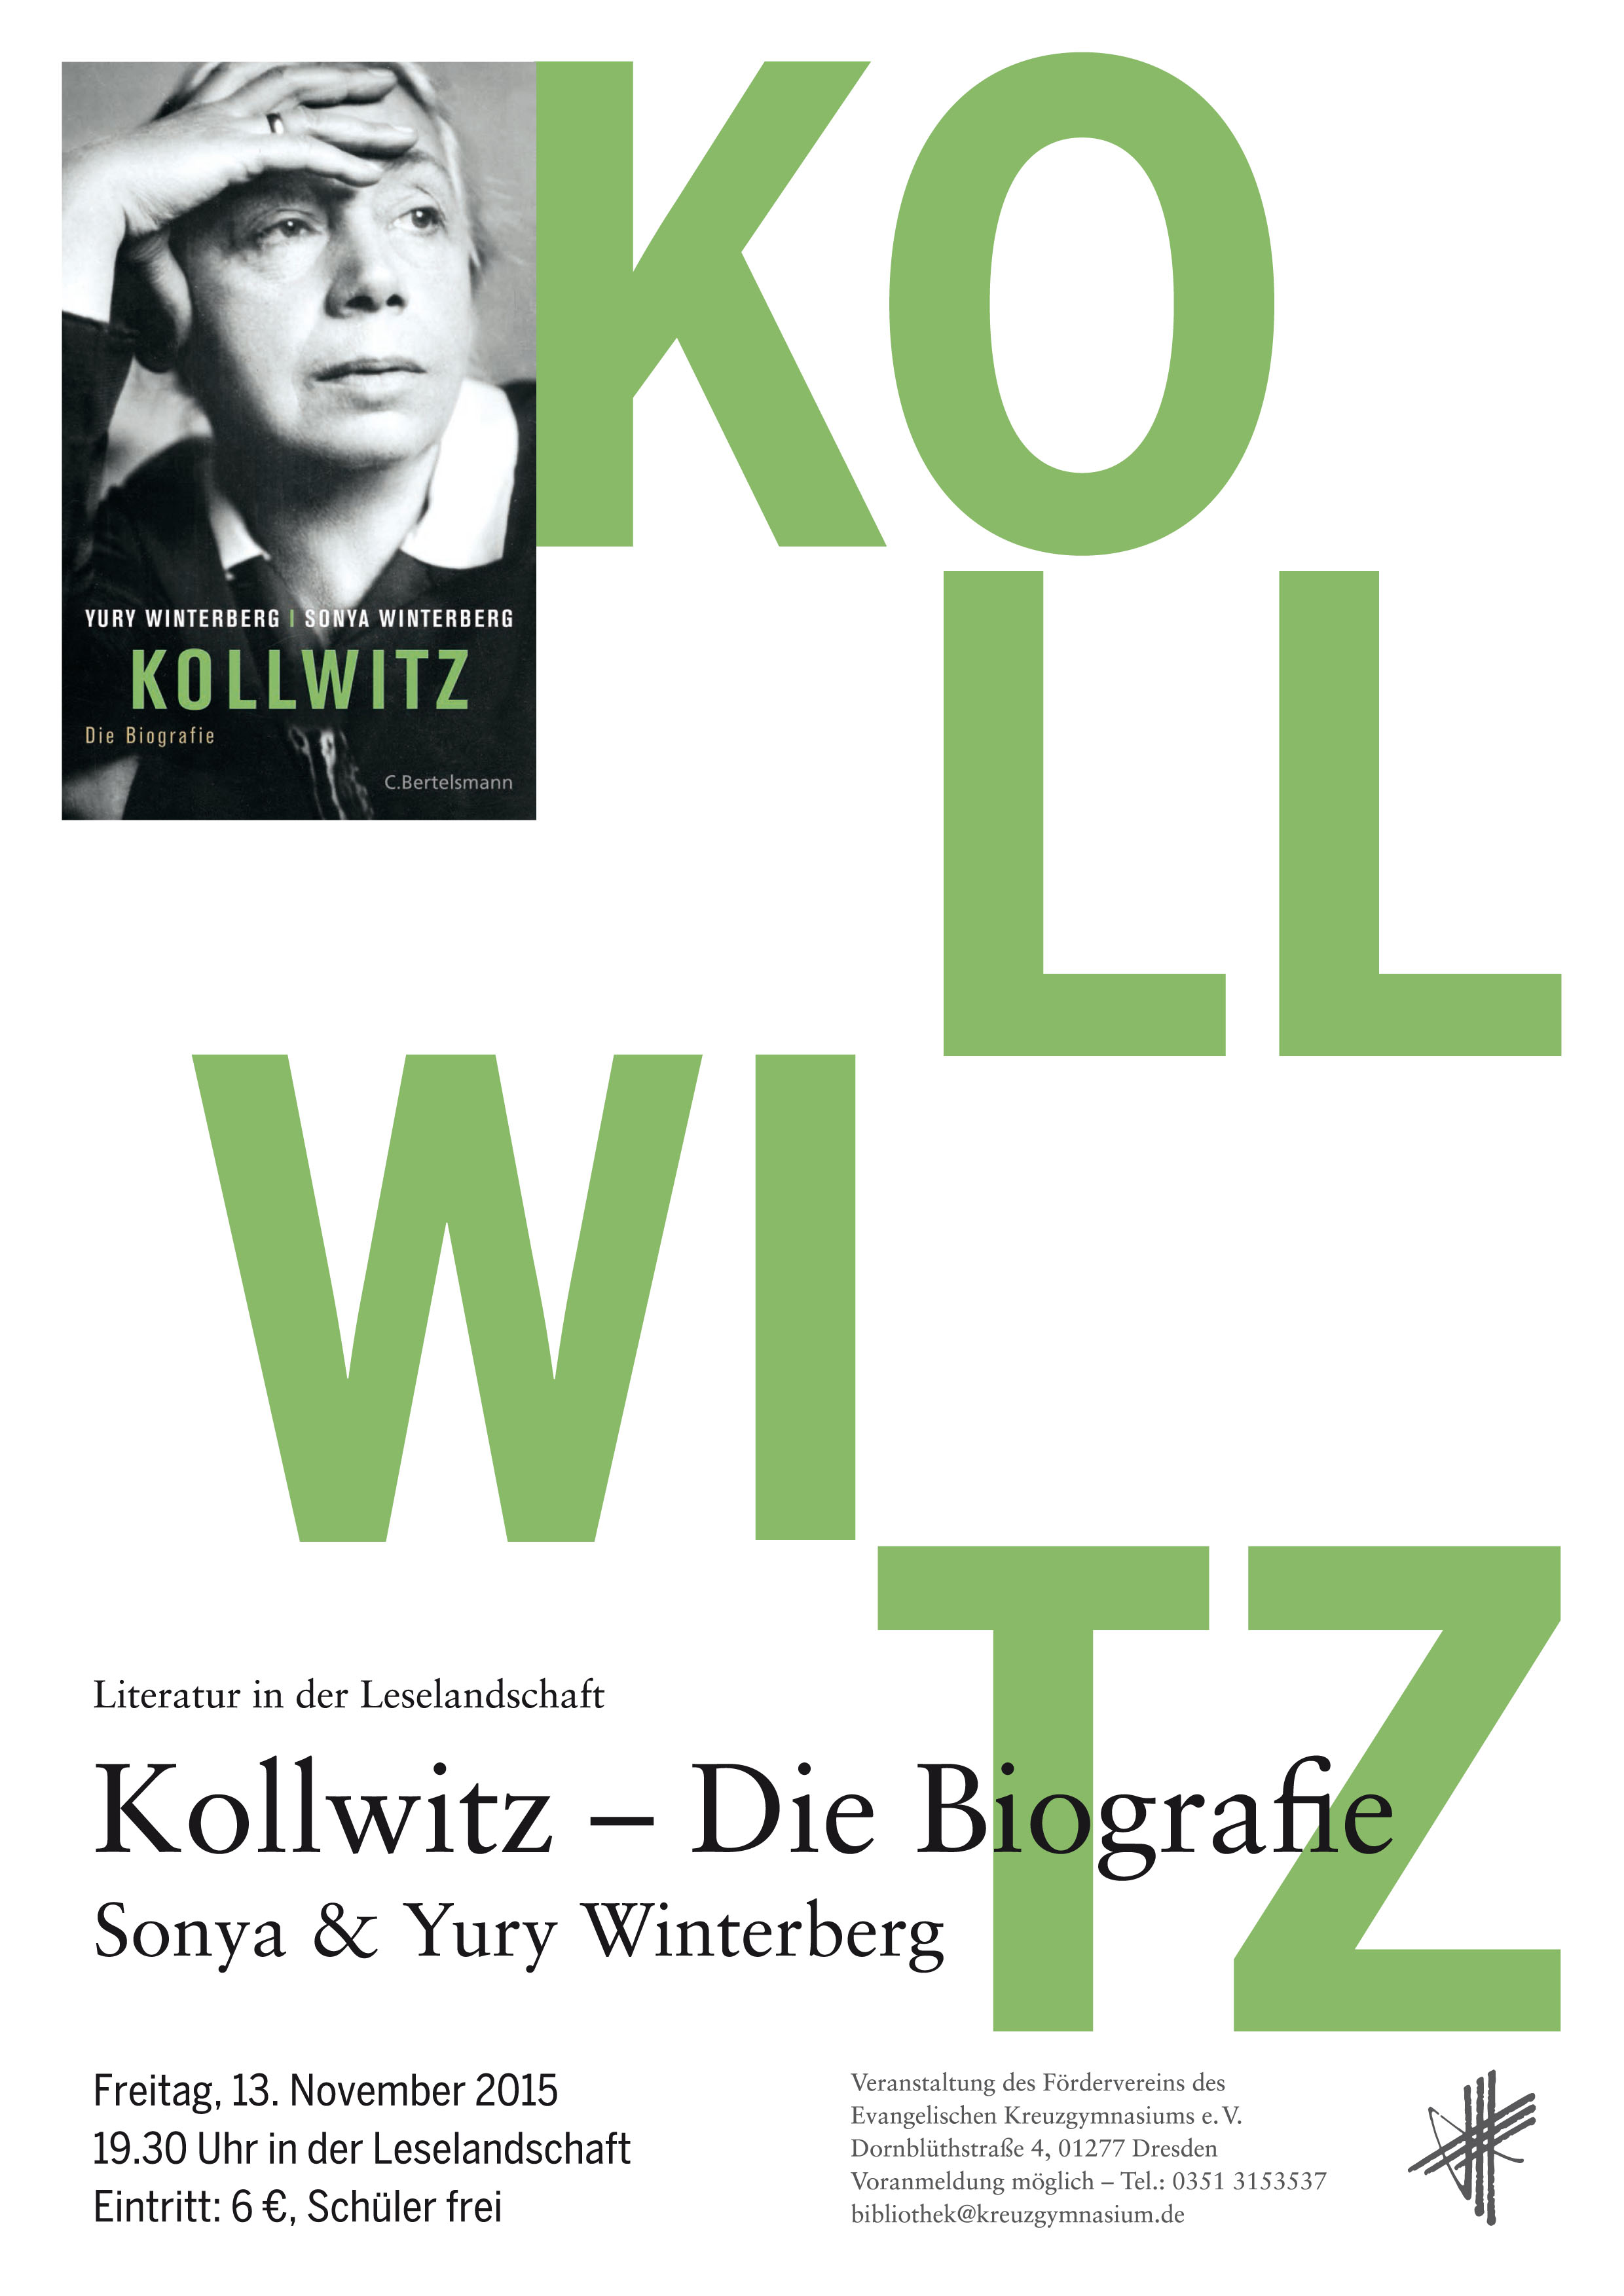 Sonya und Yury Winterberg - “Kollwitz. Die Biografie“